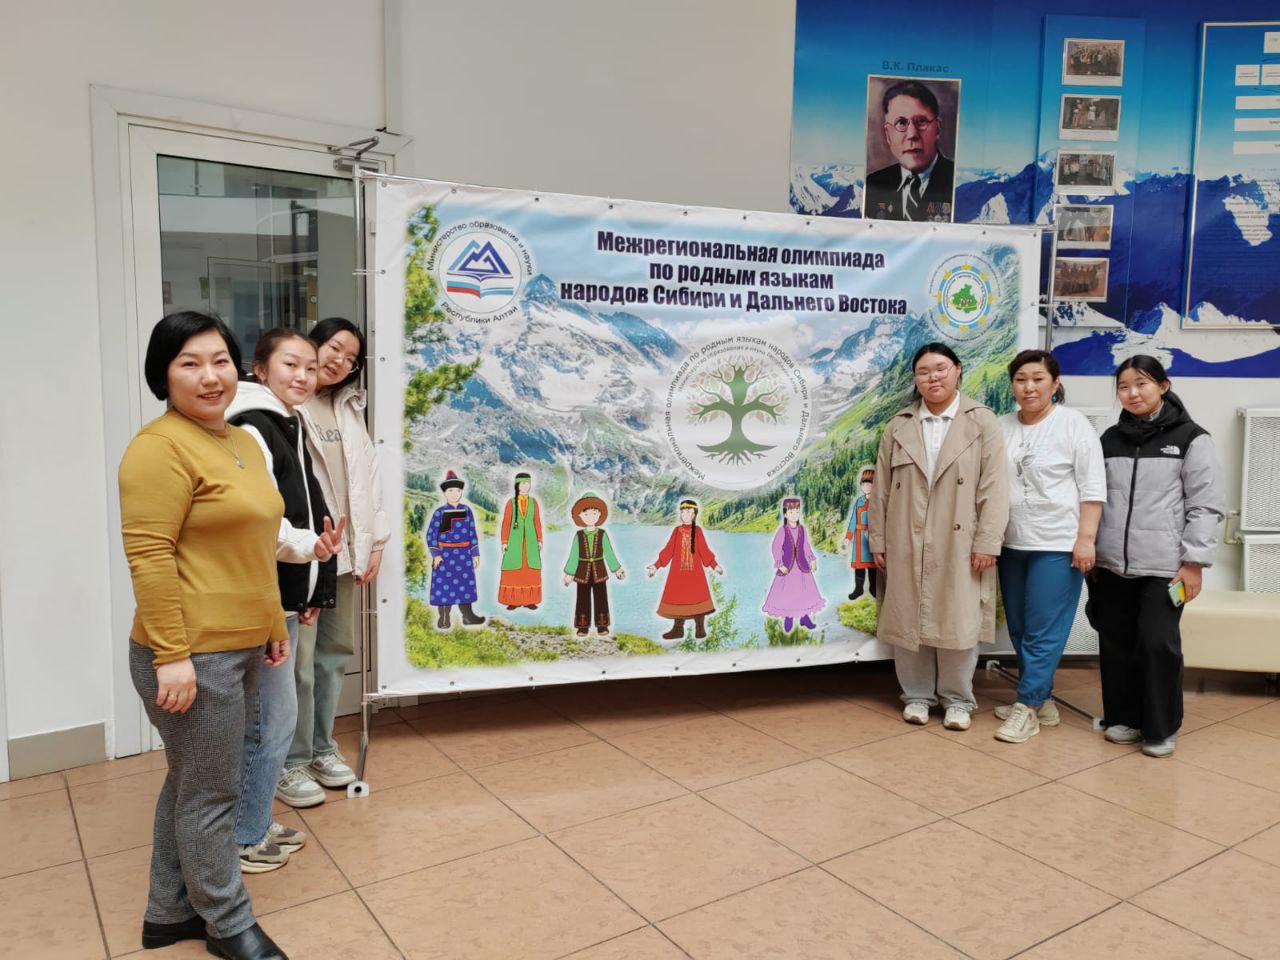 Школьники из Бурятии участвуют в олимпиаде по родным языкам народов Сибири и Дальнего Востока